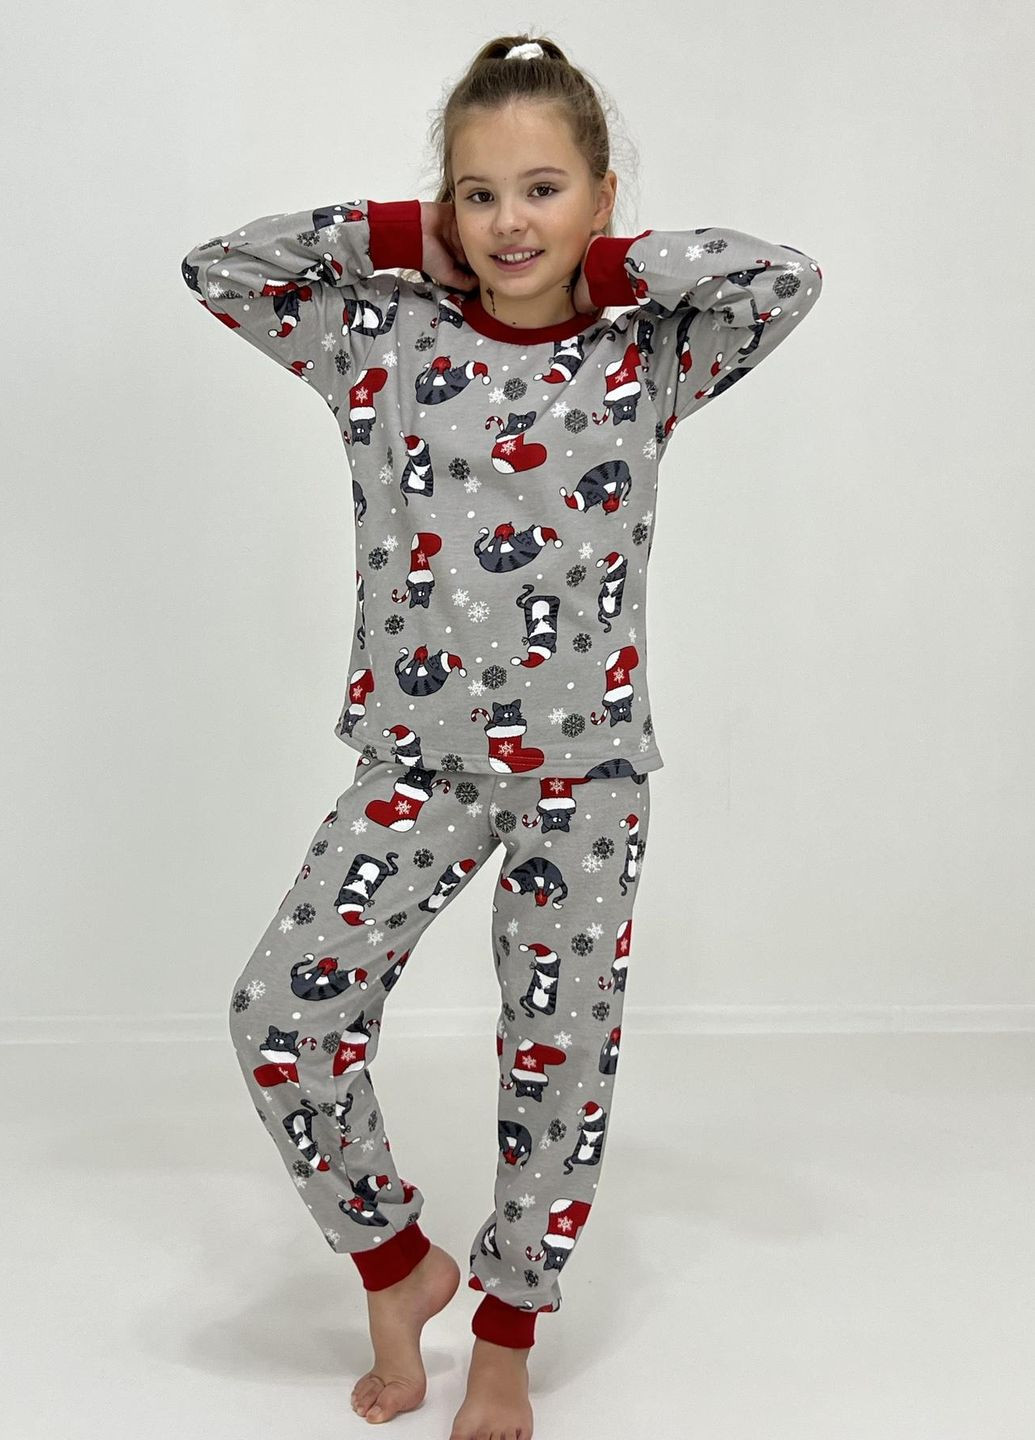 Серая зимняя пижама детская байка новогодние сапожки 134 серая 11849985-1 Triko